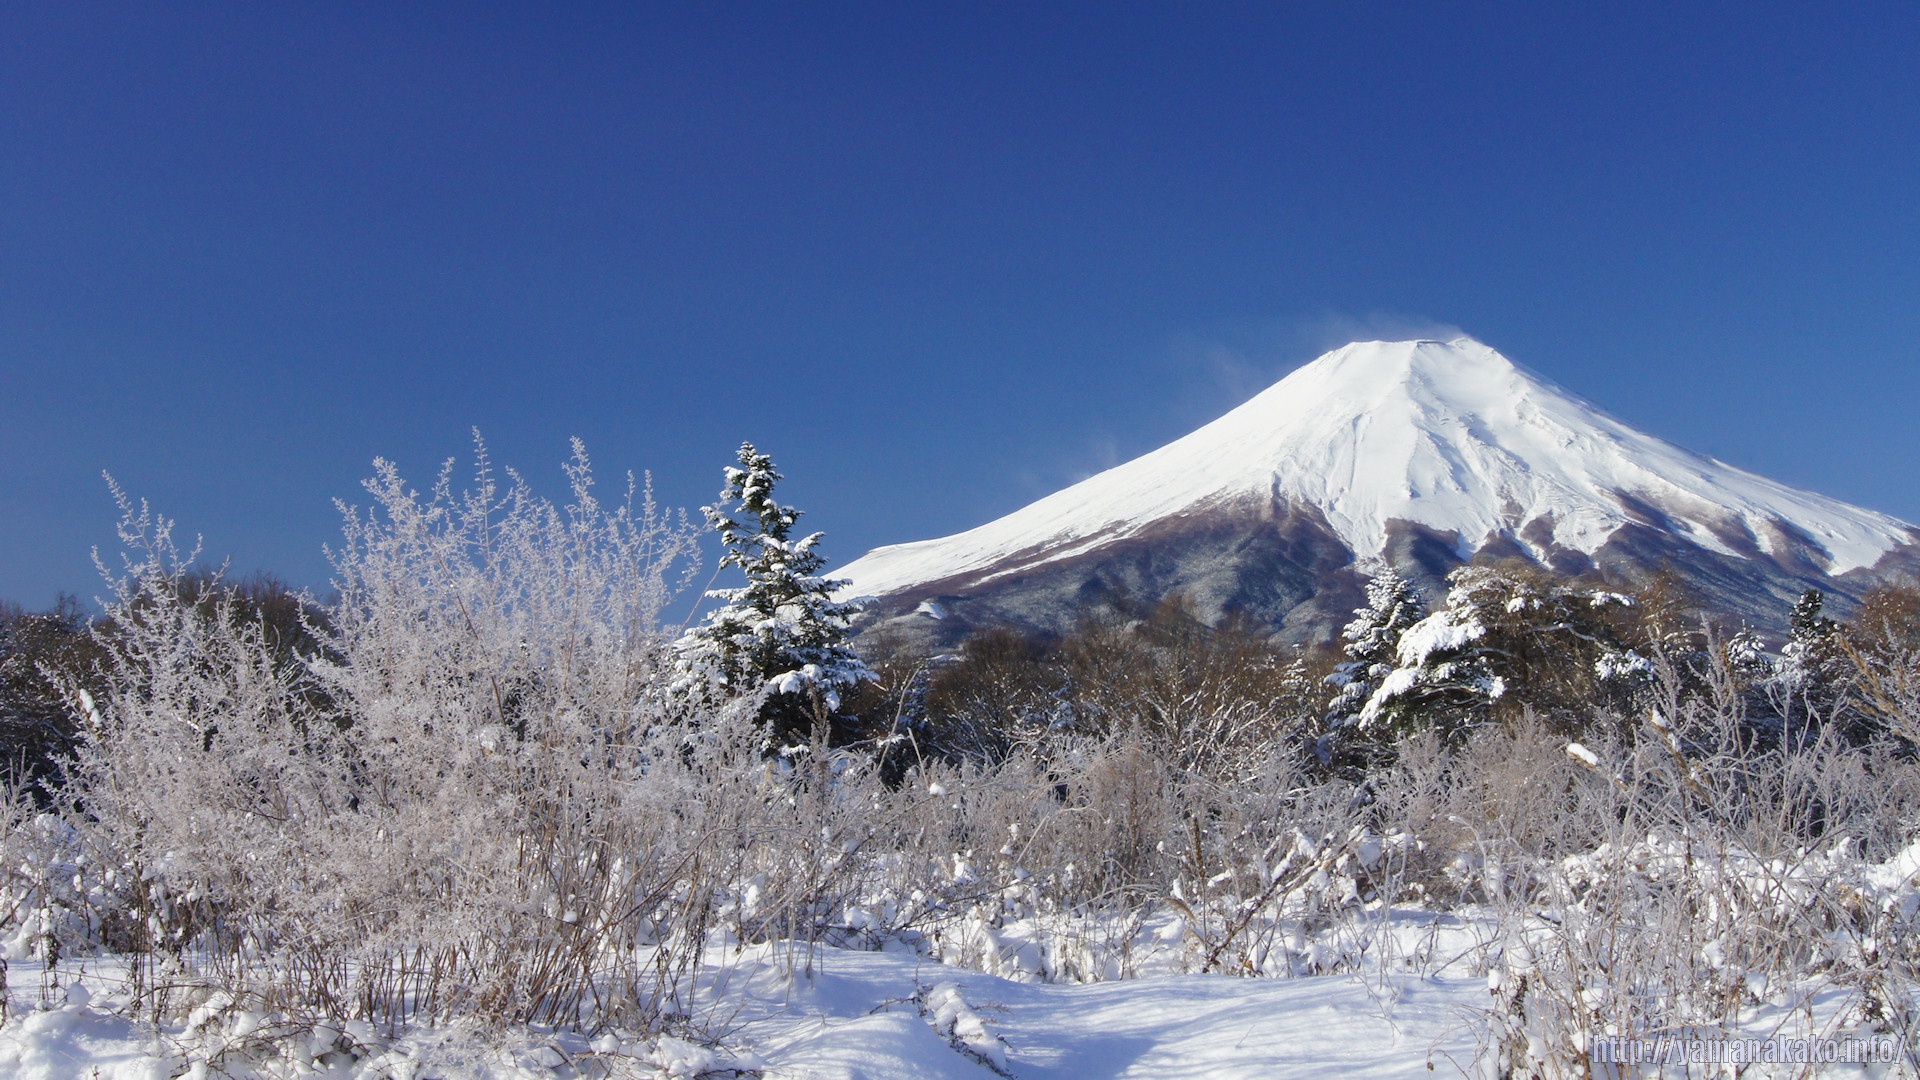 11年の富士山 壁紙用 山中湖観光情報